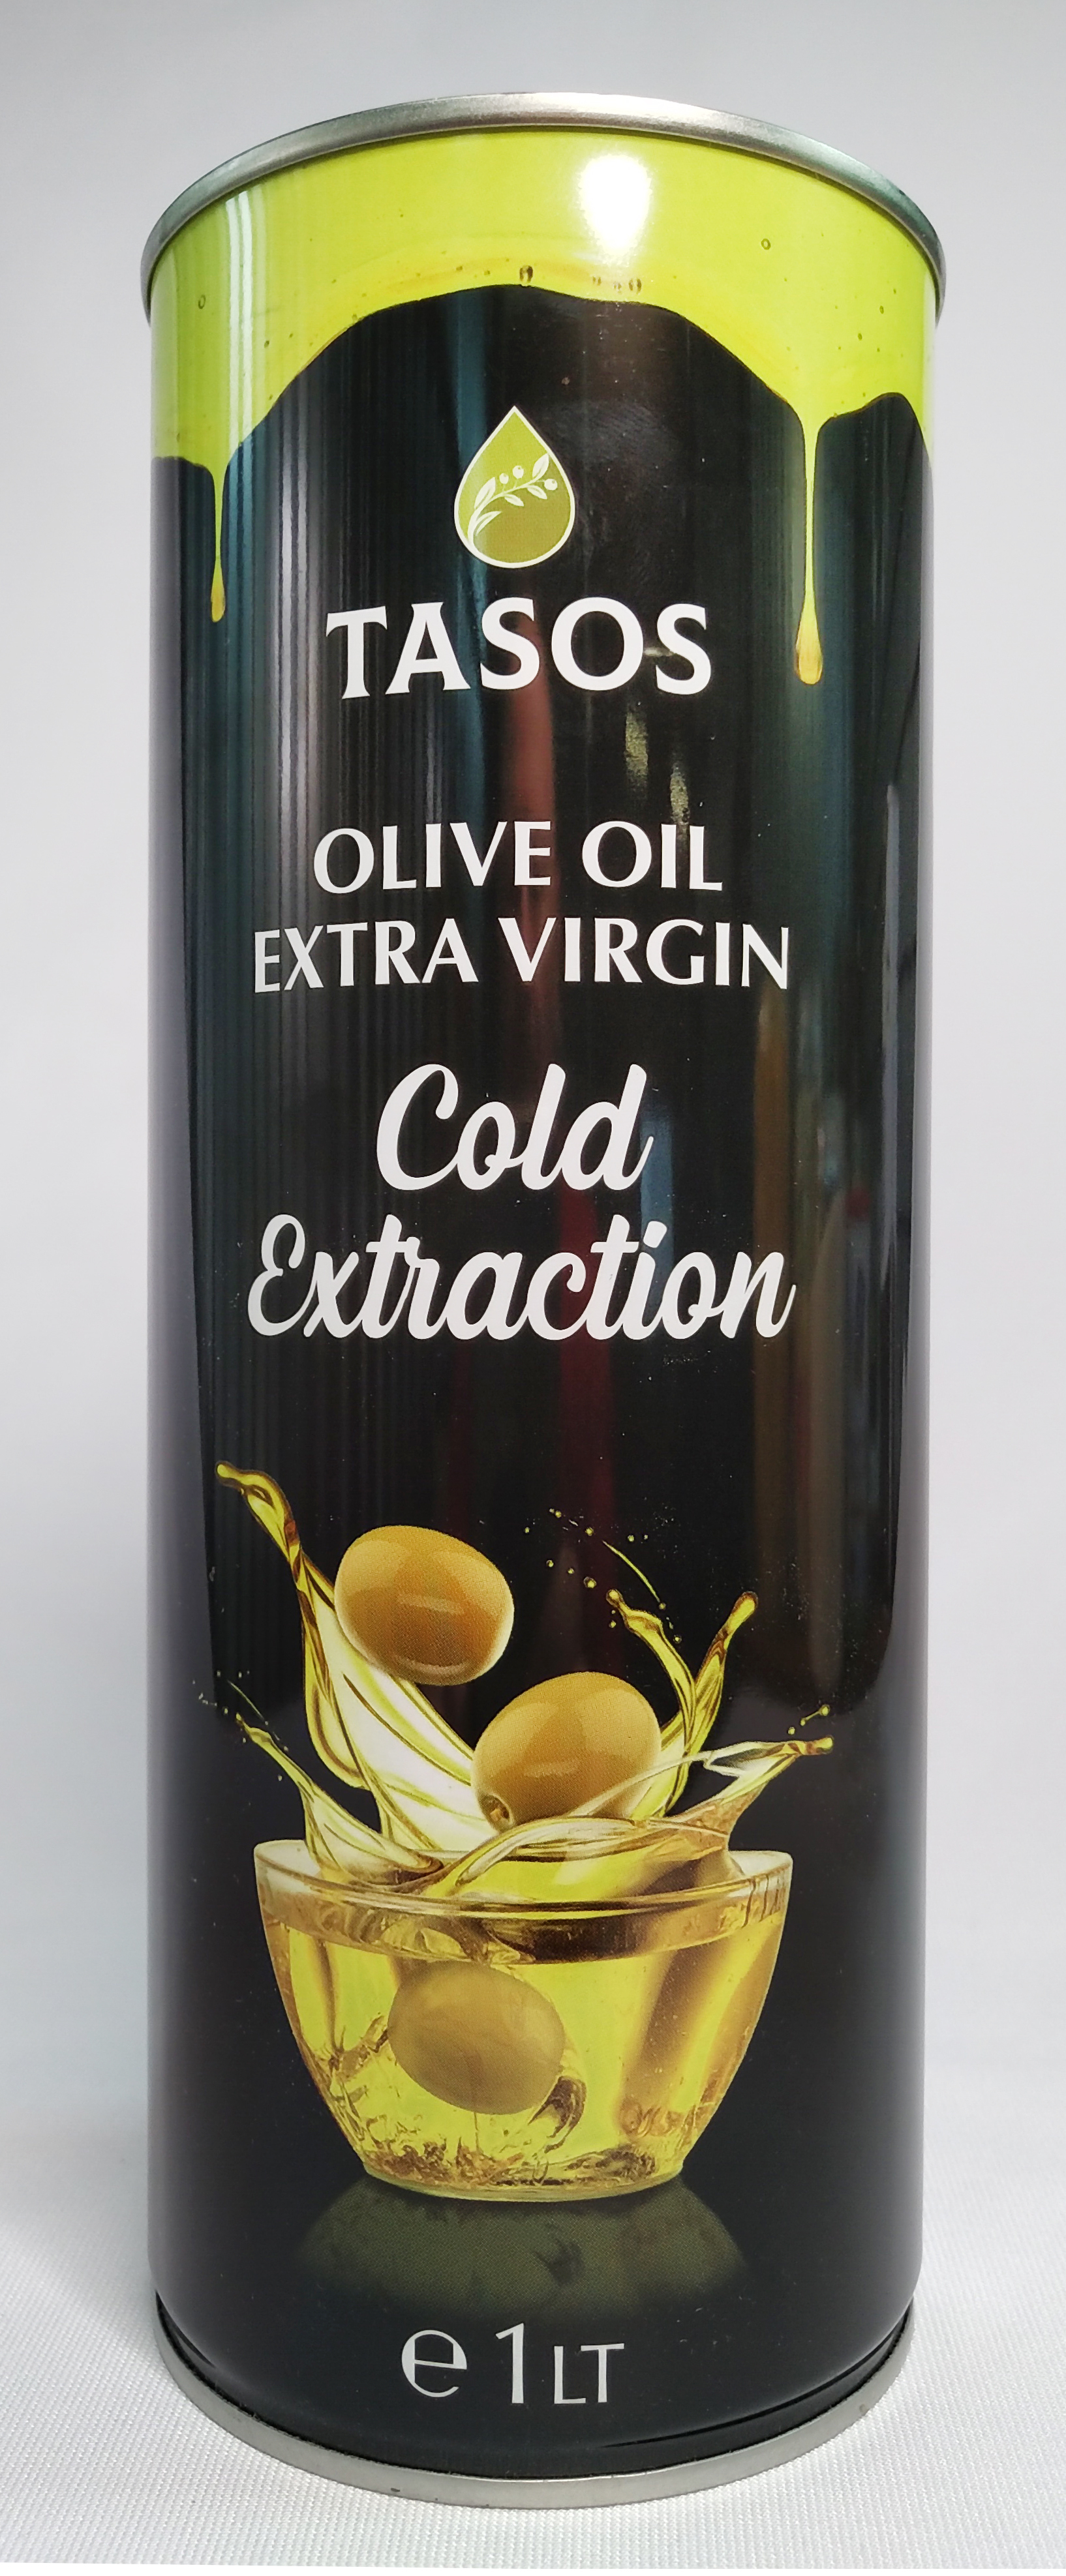 Оливковое масло отзывы покупателей. Греческое оливковое масло Extra Virgin Gold Extraction. Оливковое масло Греция. Олив Ойл масло оливковое. Оливковое масло 1 литр.